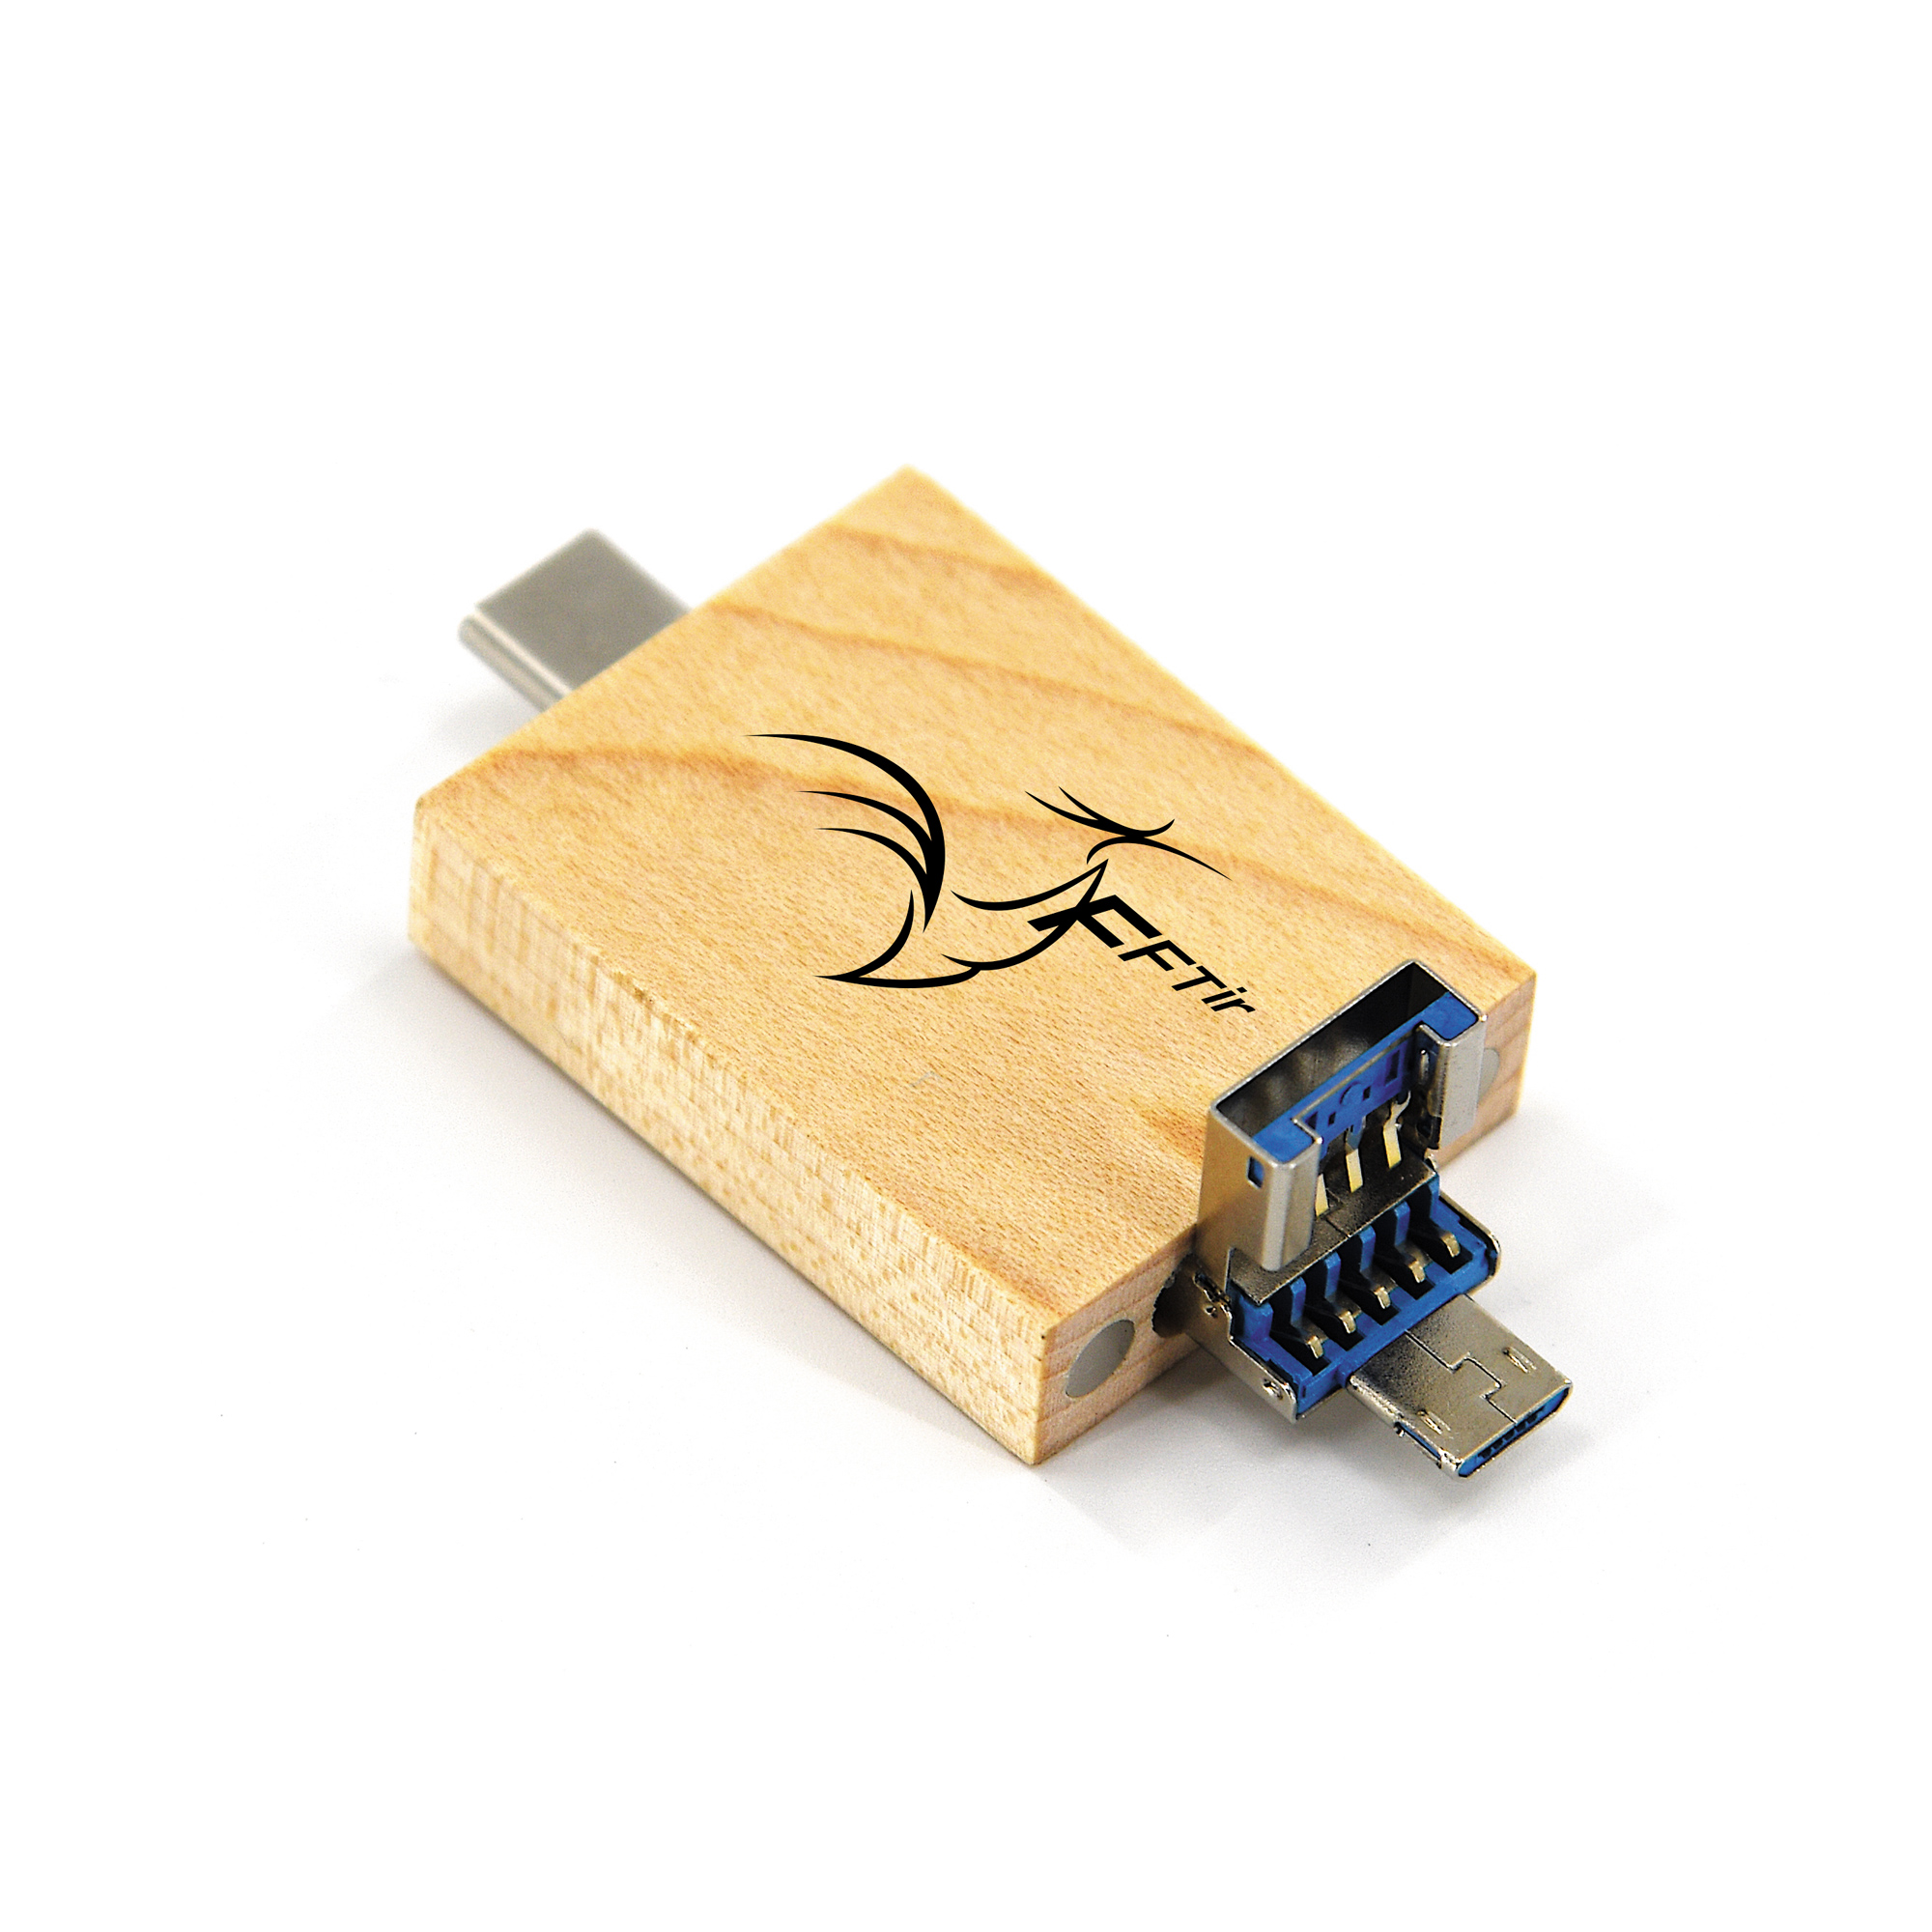 Clé USB 3.0 en bois - 16 Go Bois de rose